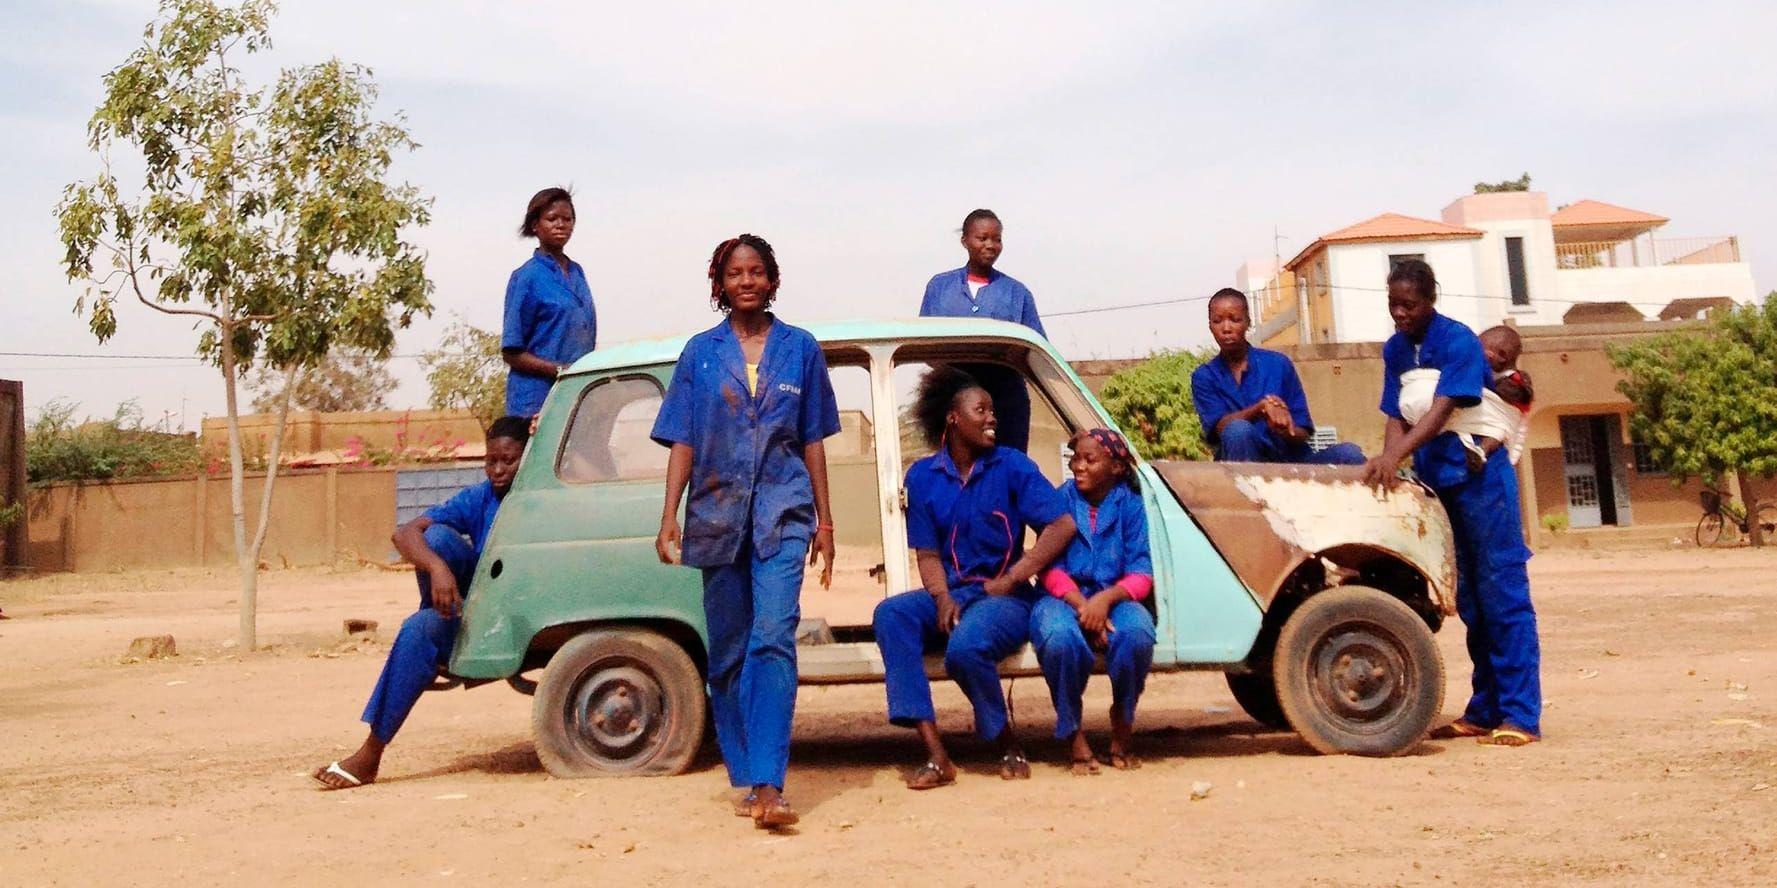 Tonårsflickorna i ”Ouaga girls” har hamnat på bilmekanikerutbildningen av vitt skilda orsaker. Normbrytare blir de liksom på köpet. Pressbild.